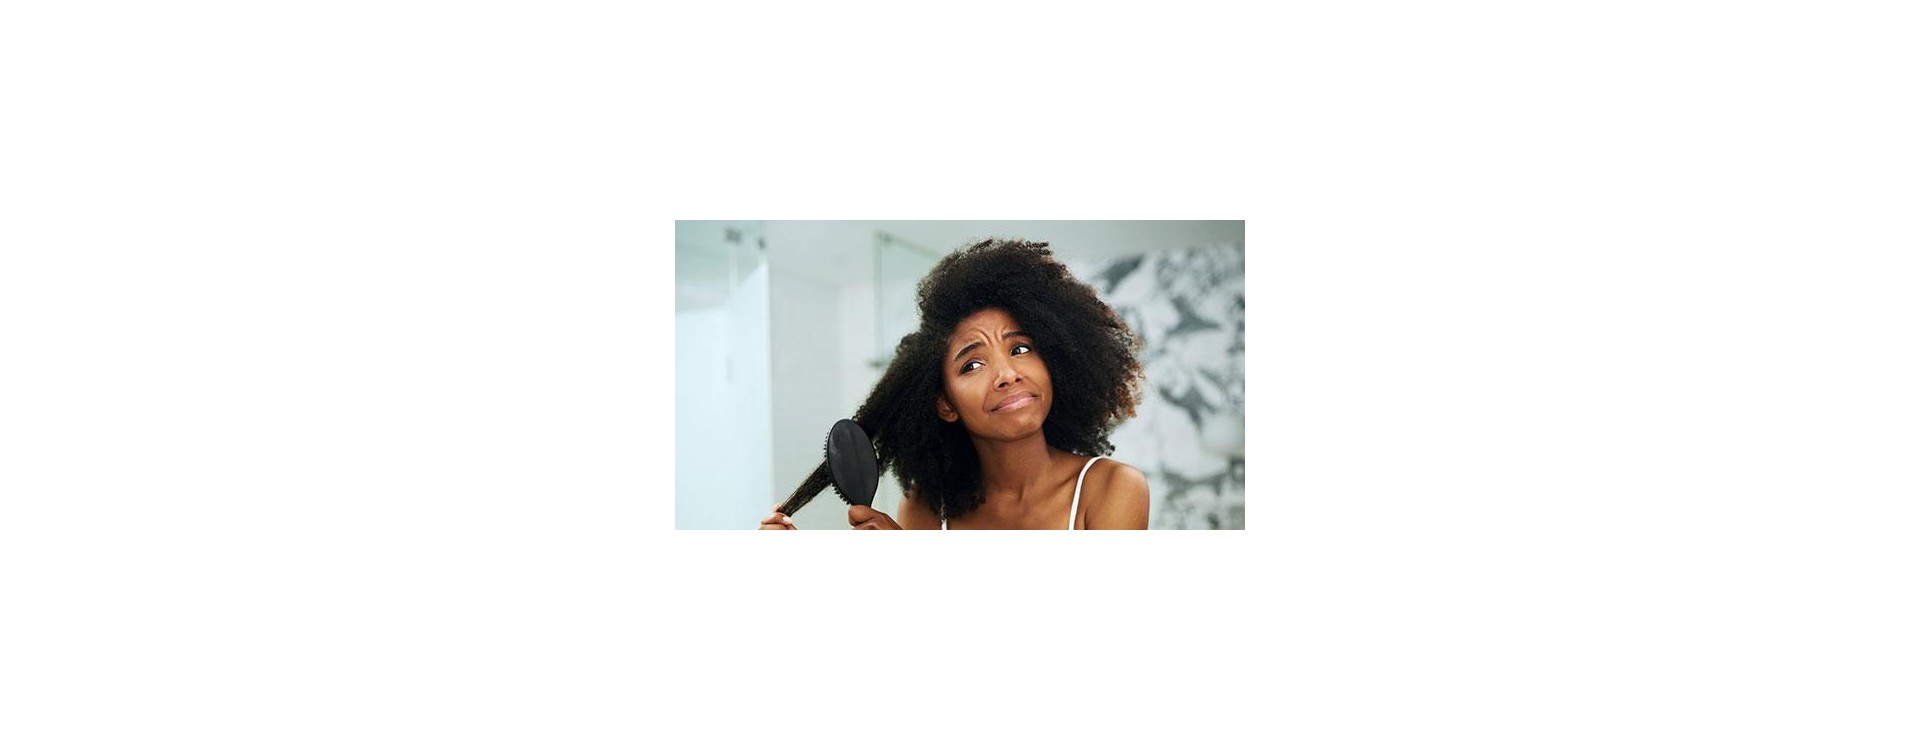 Cheveux bouclés : Où aller quand on n'a pas les cheveux afro ?